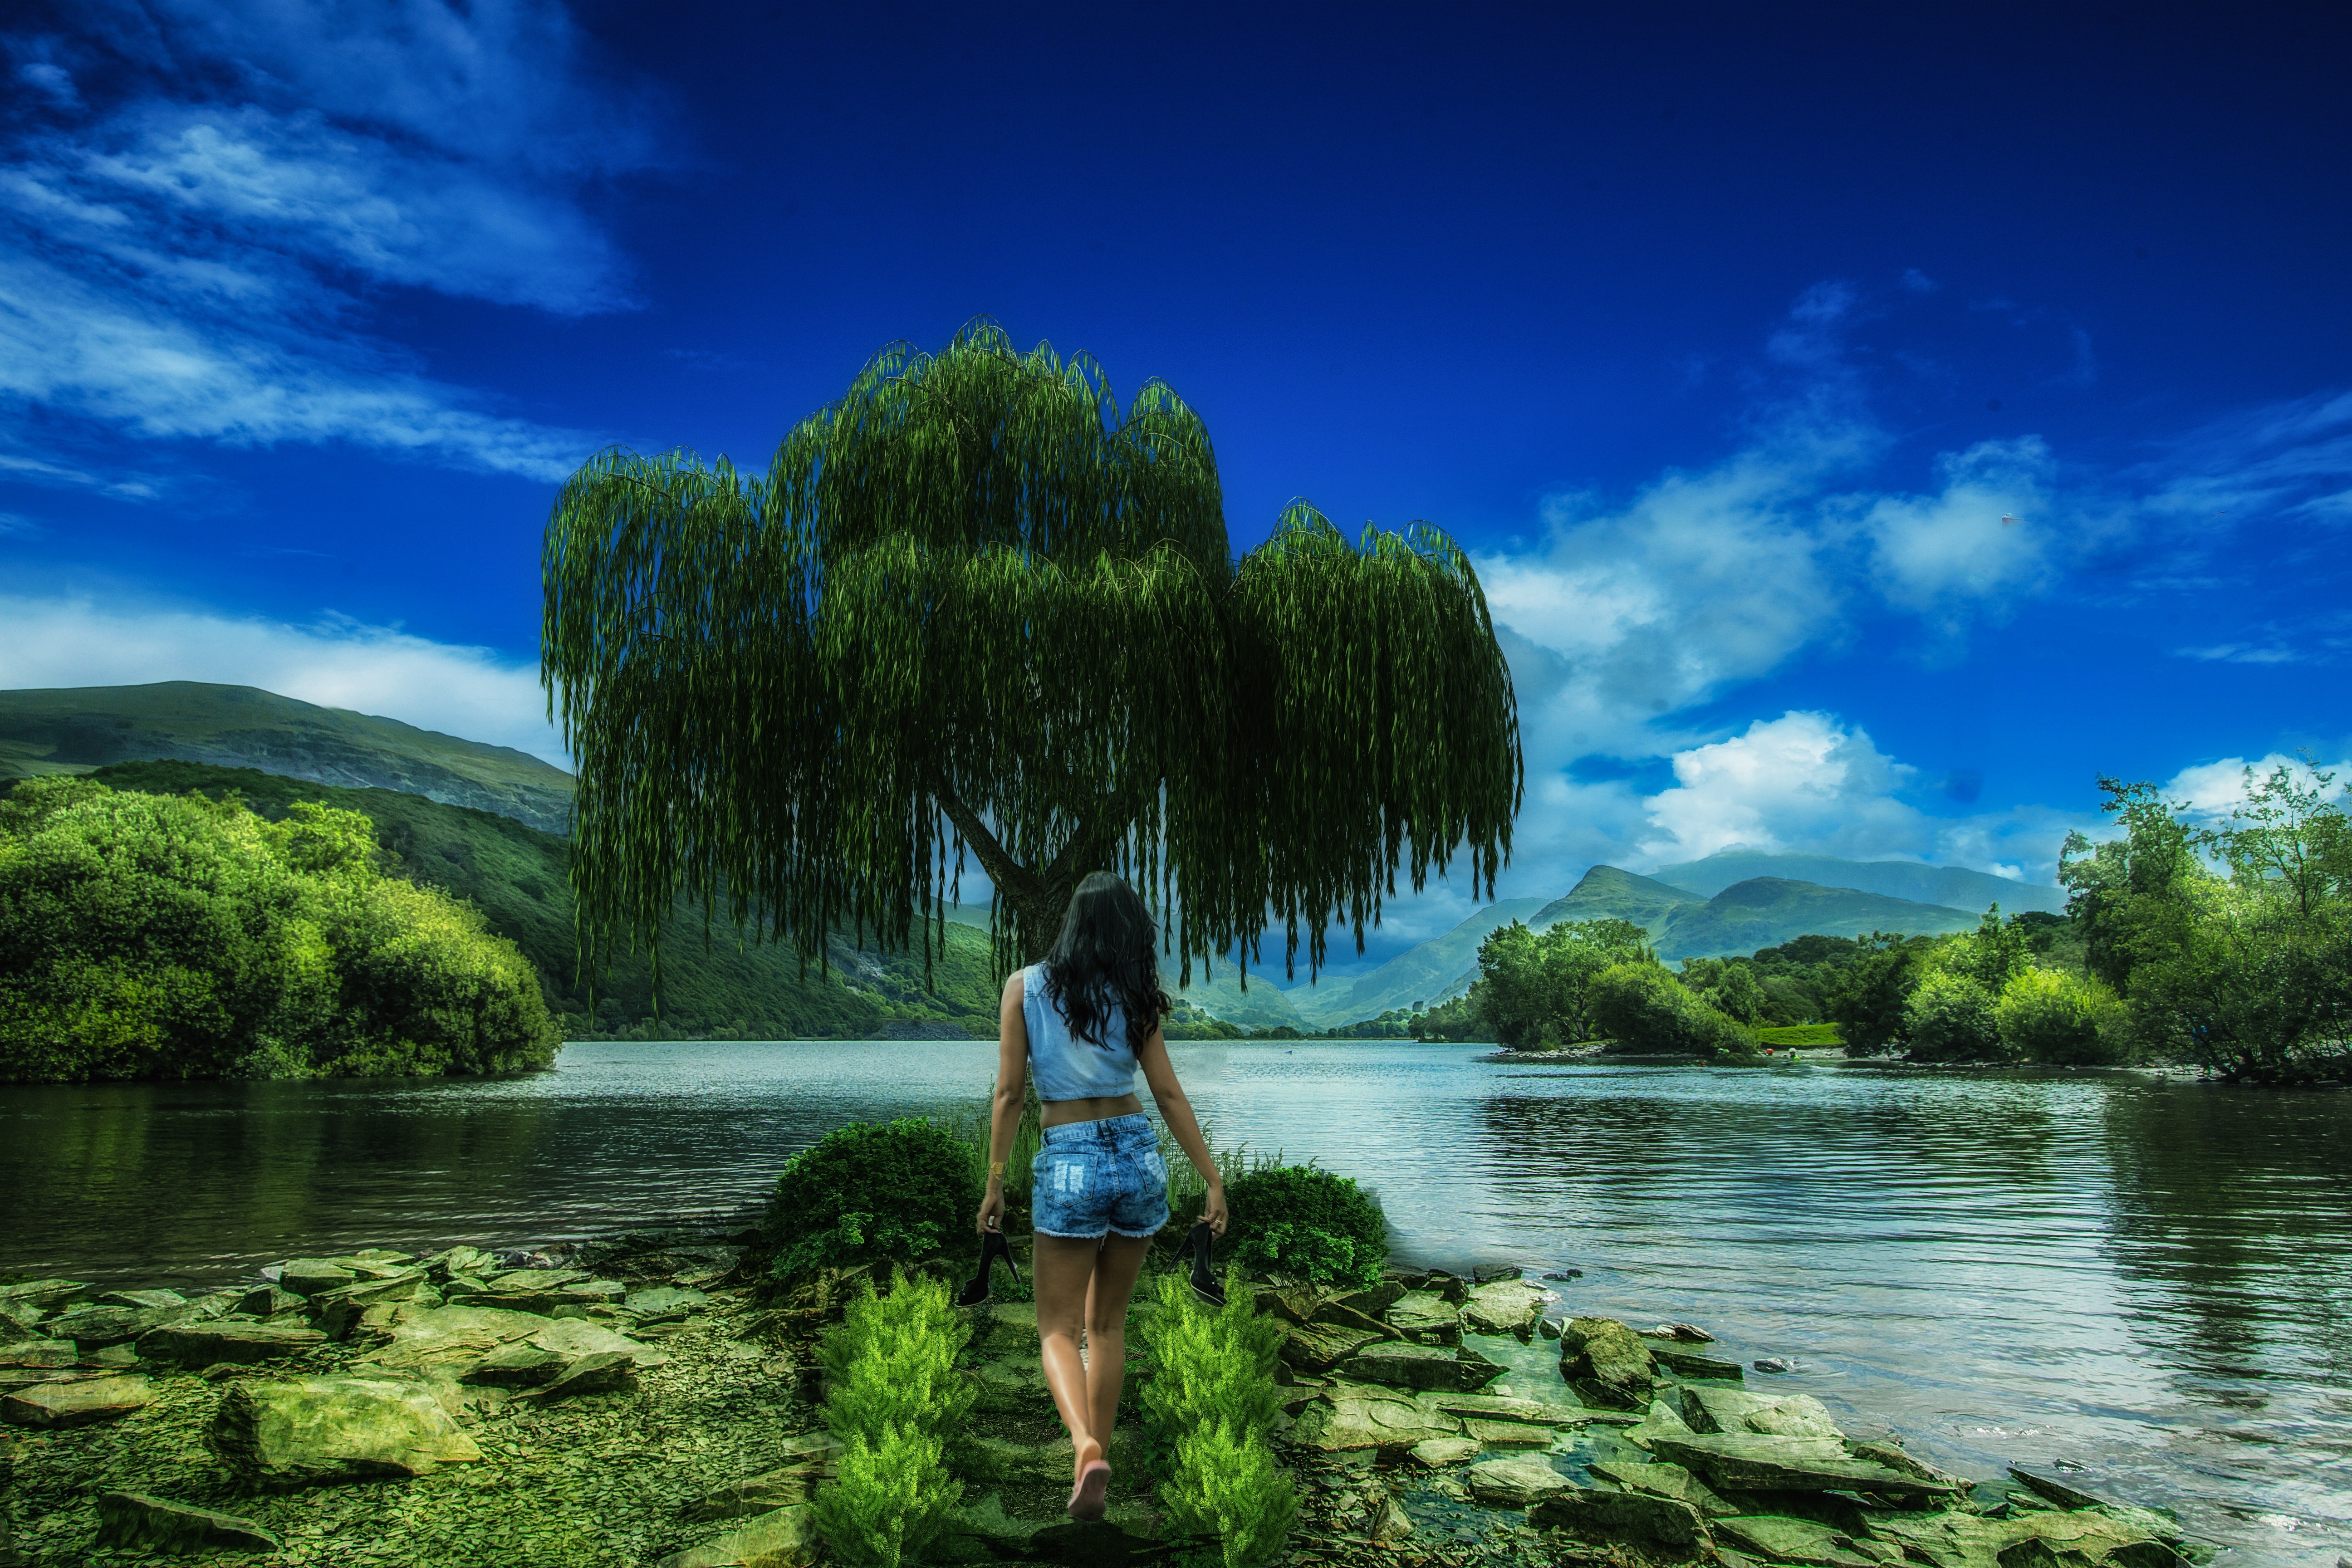 descarga gratuita de imágenes de fondo de pantalla,naturaleza,paisaje natural,agua,cielo,árbol